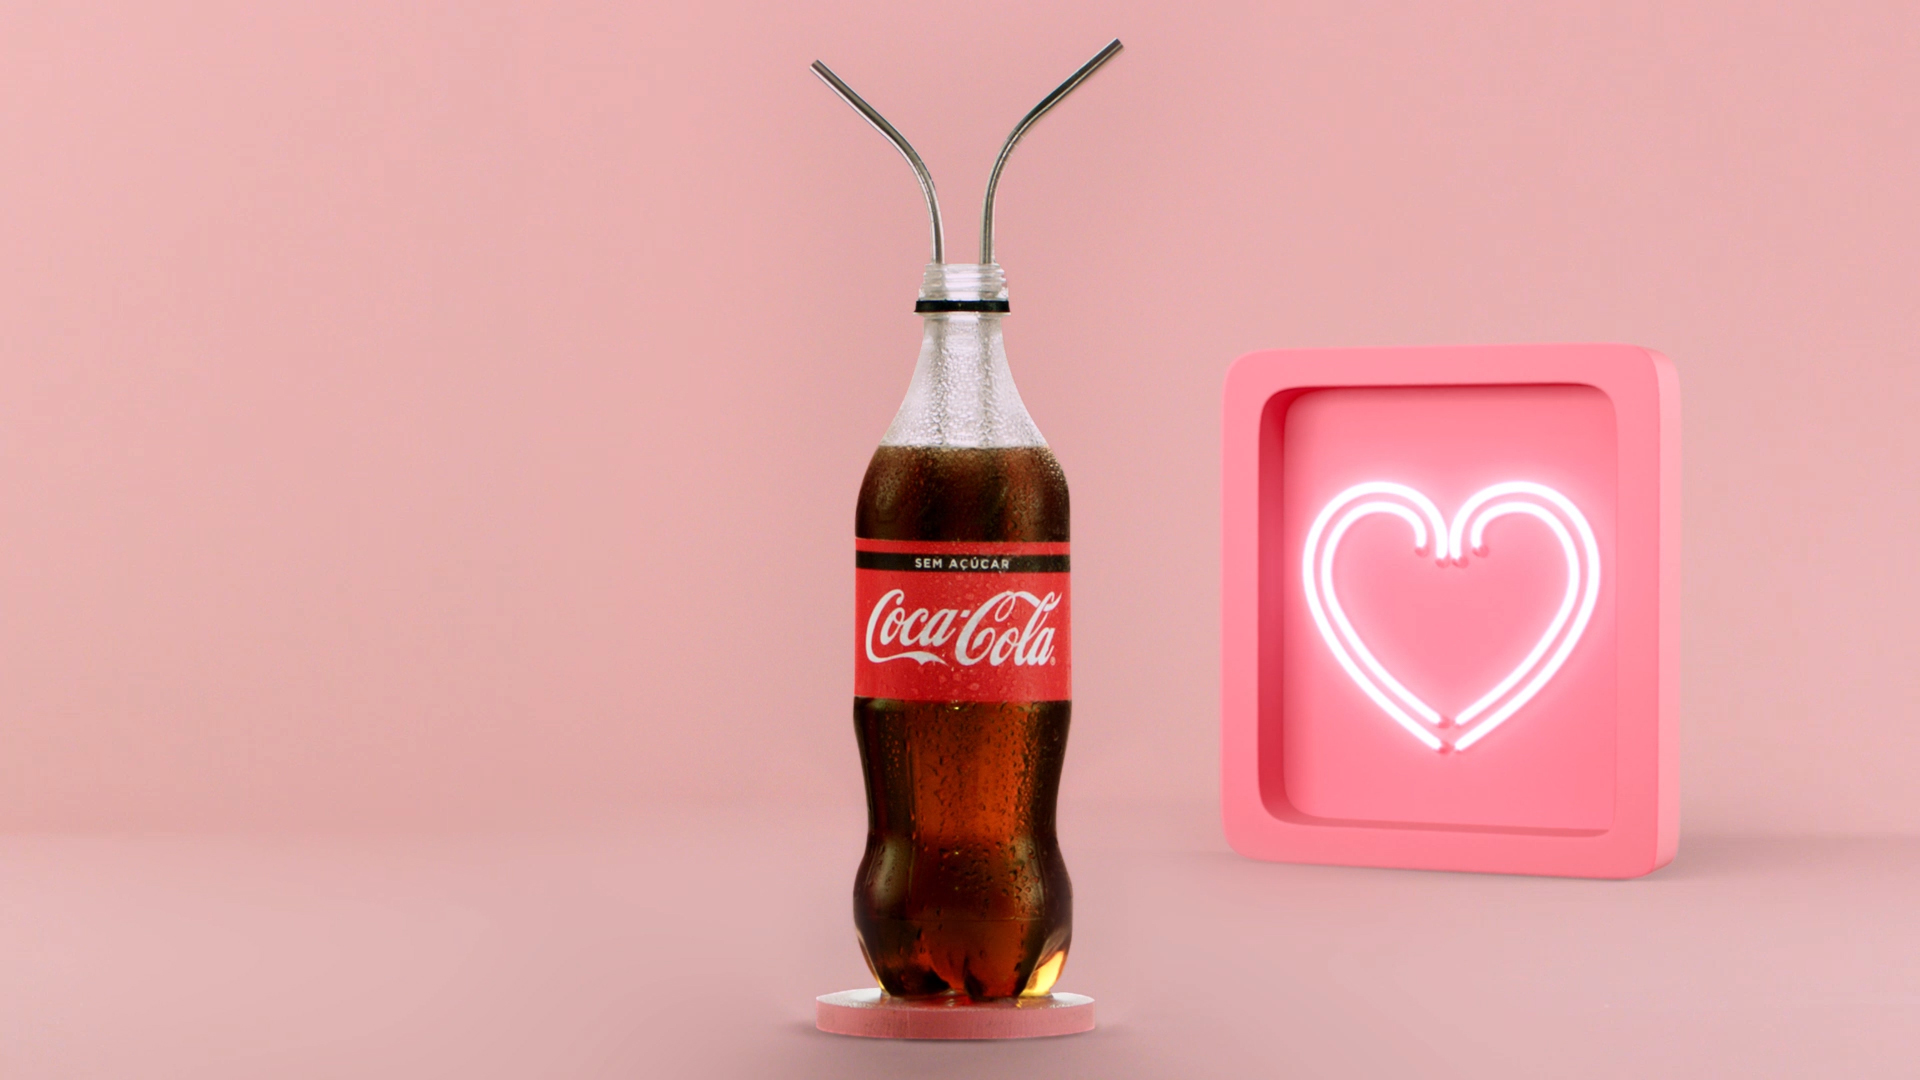 Na imagem, há uma garrafa de Coca-Cola com dois canudos dentro. Ao lado, um coração rosa com neon branco.